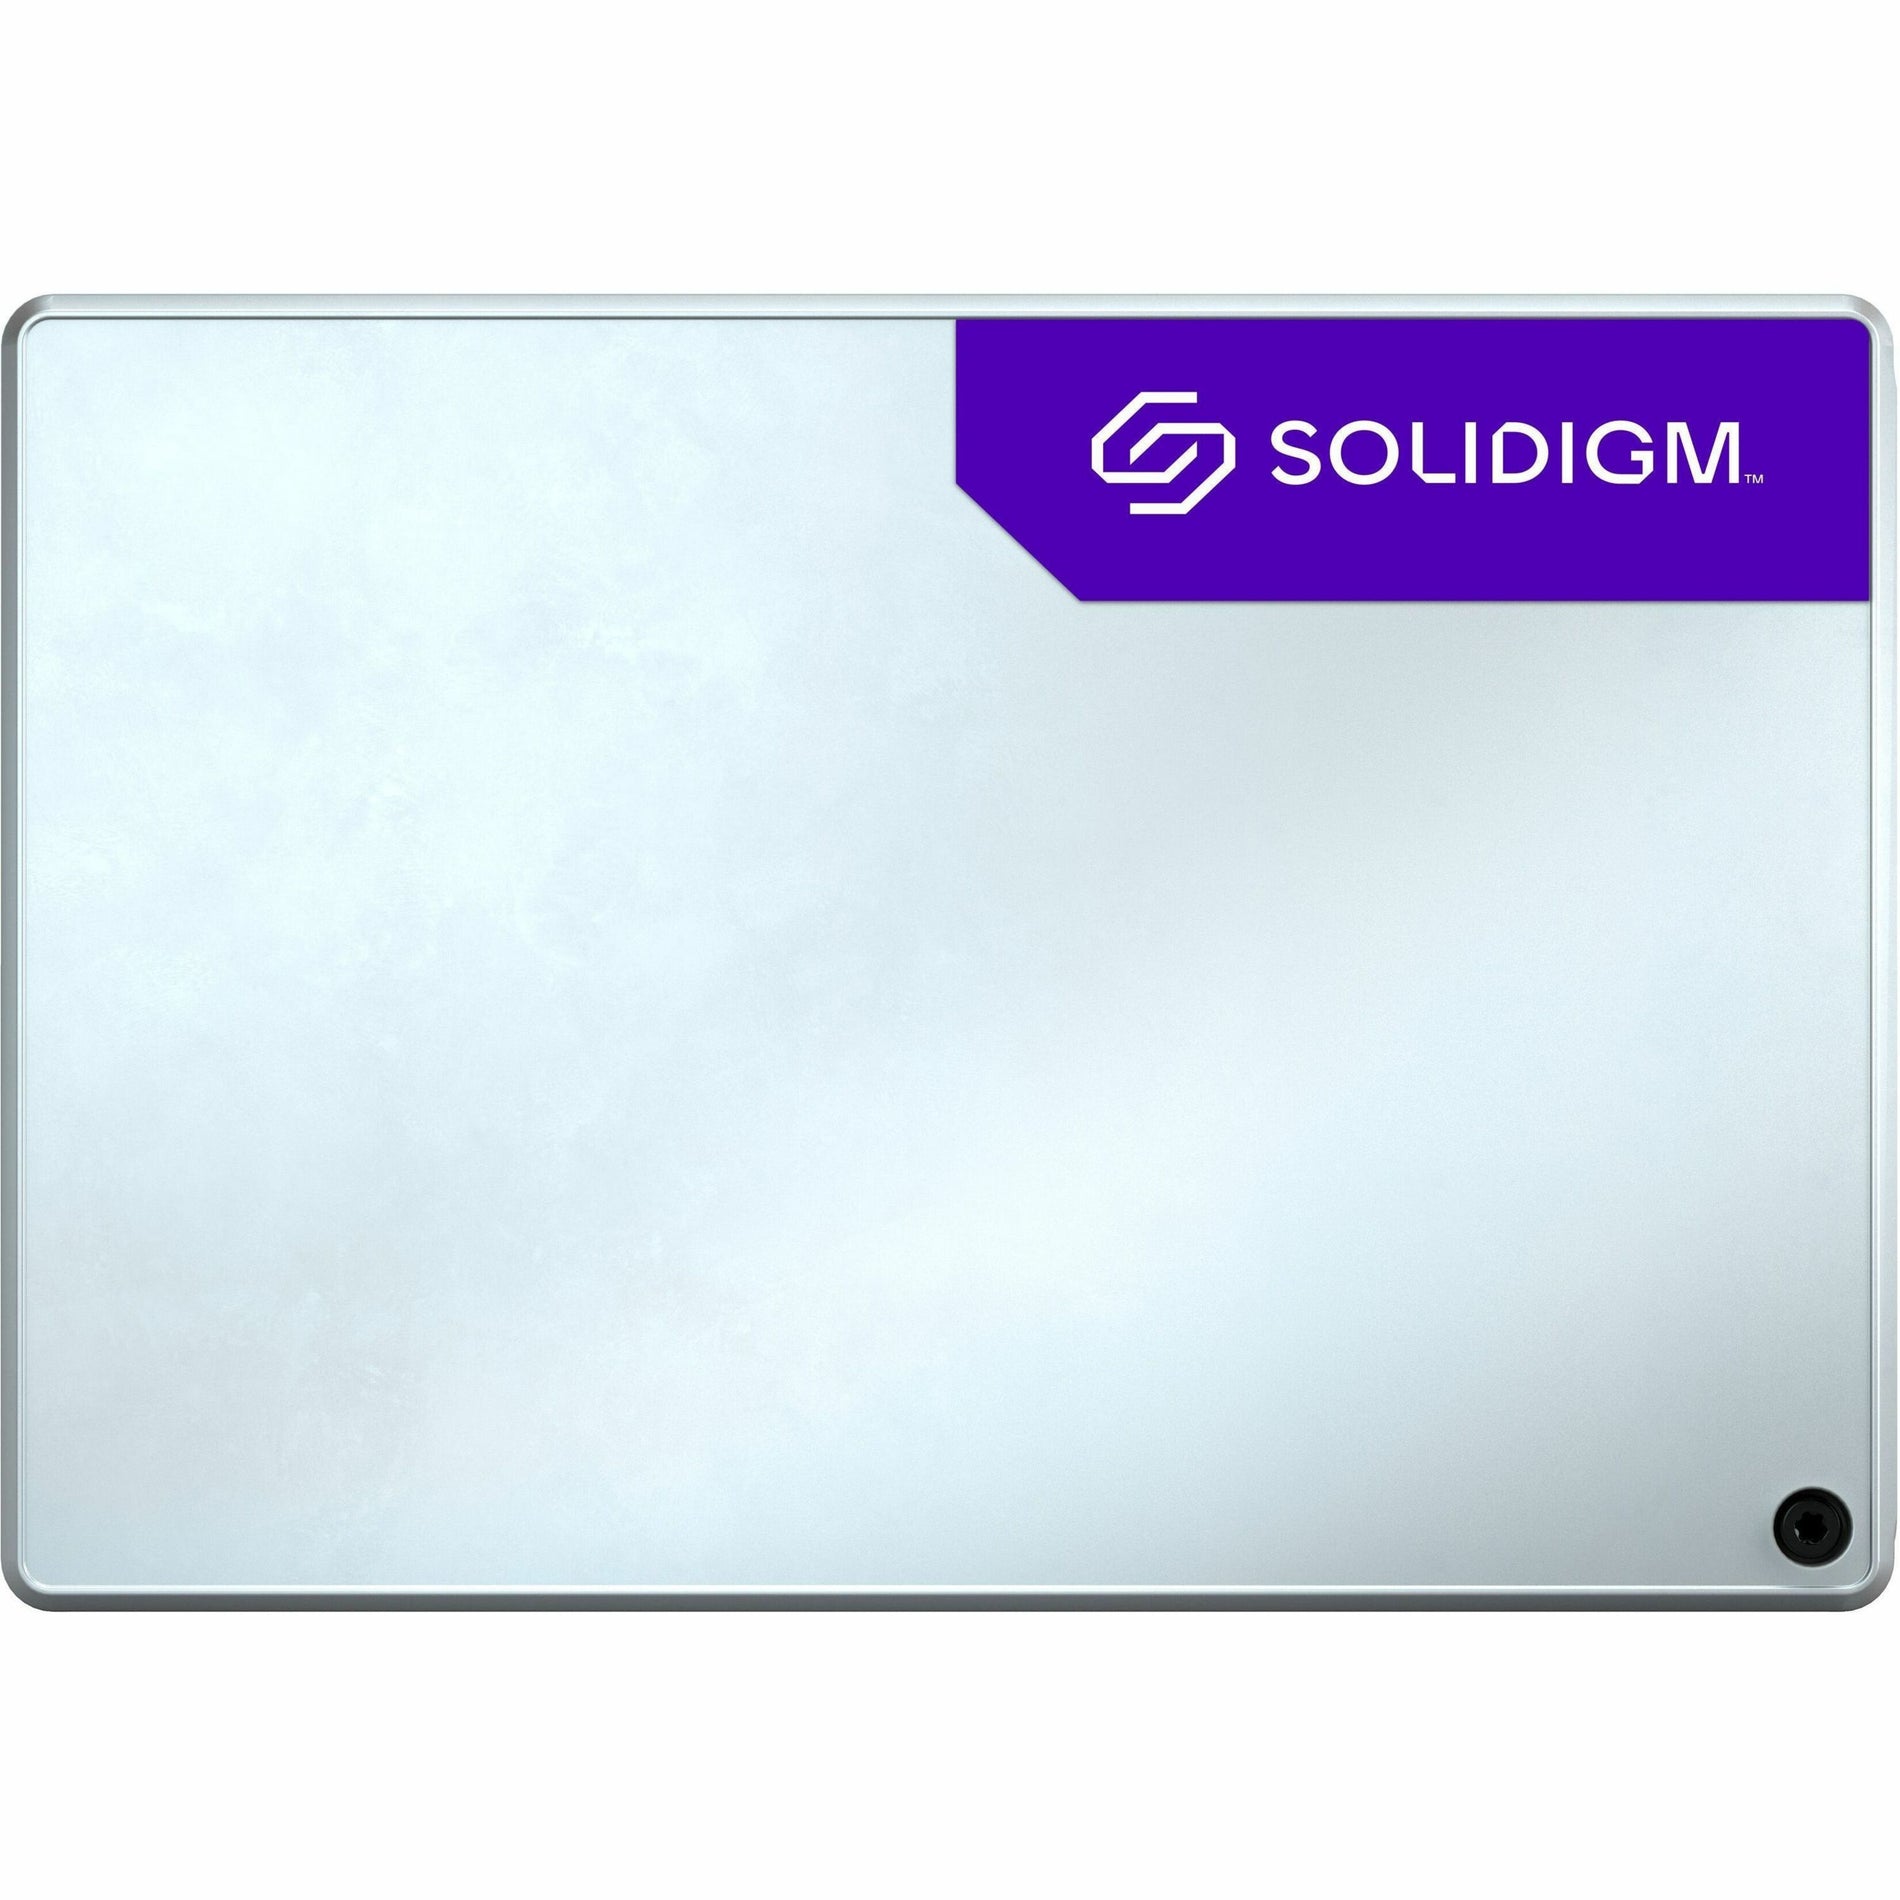 SOLIDIGM D5-P5430 3.84TB Internal Solid State Drive (SBFPF2BU038T001)